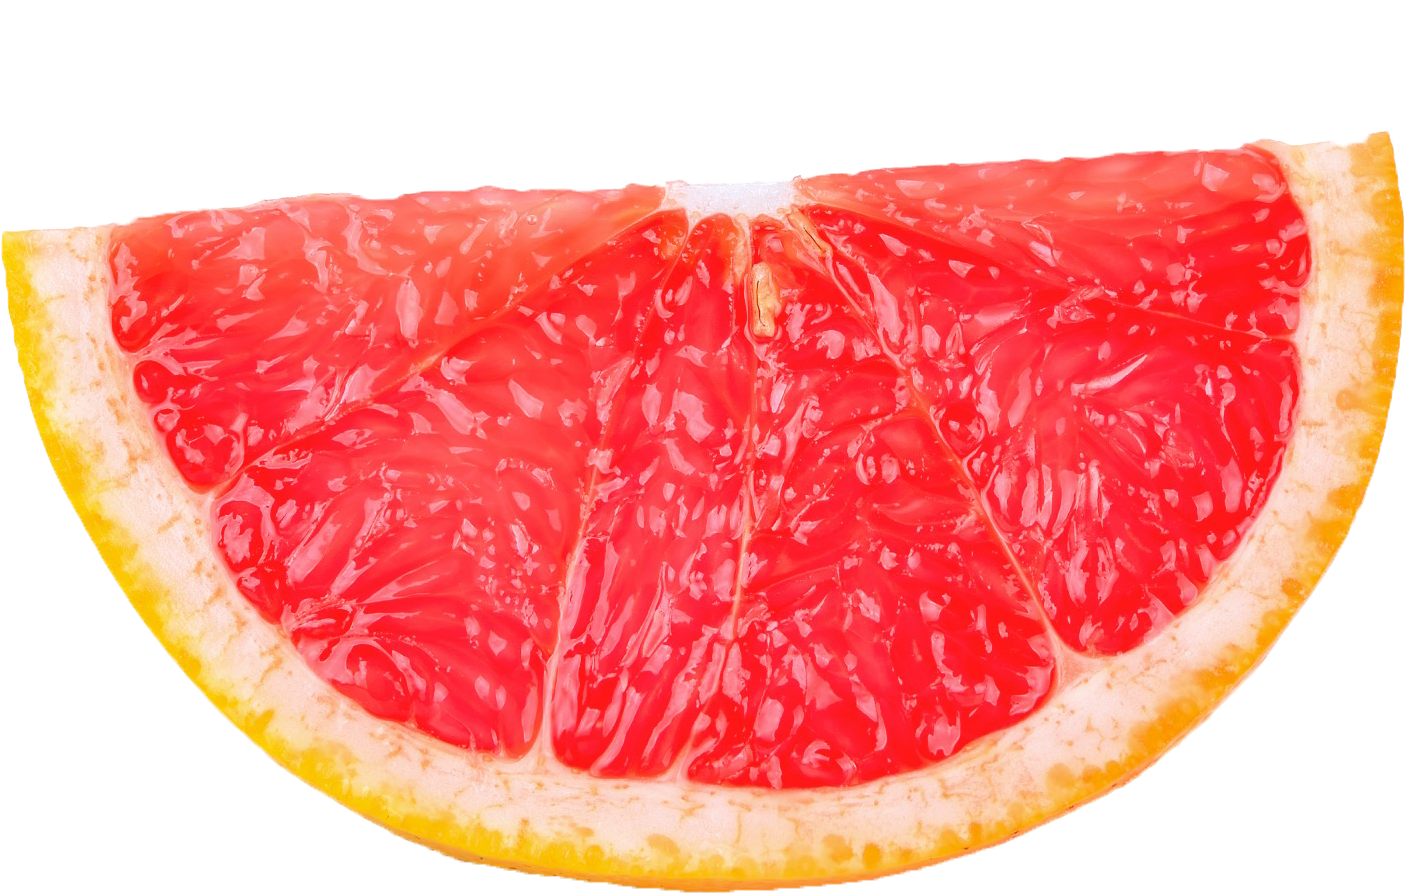 A Slice Of A Grapefruit